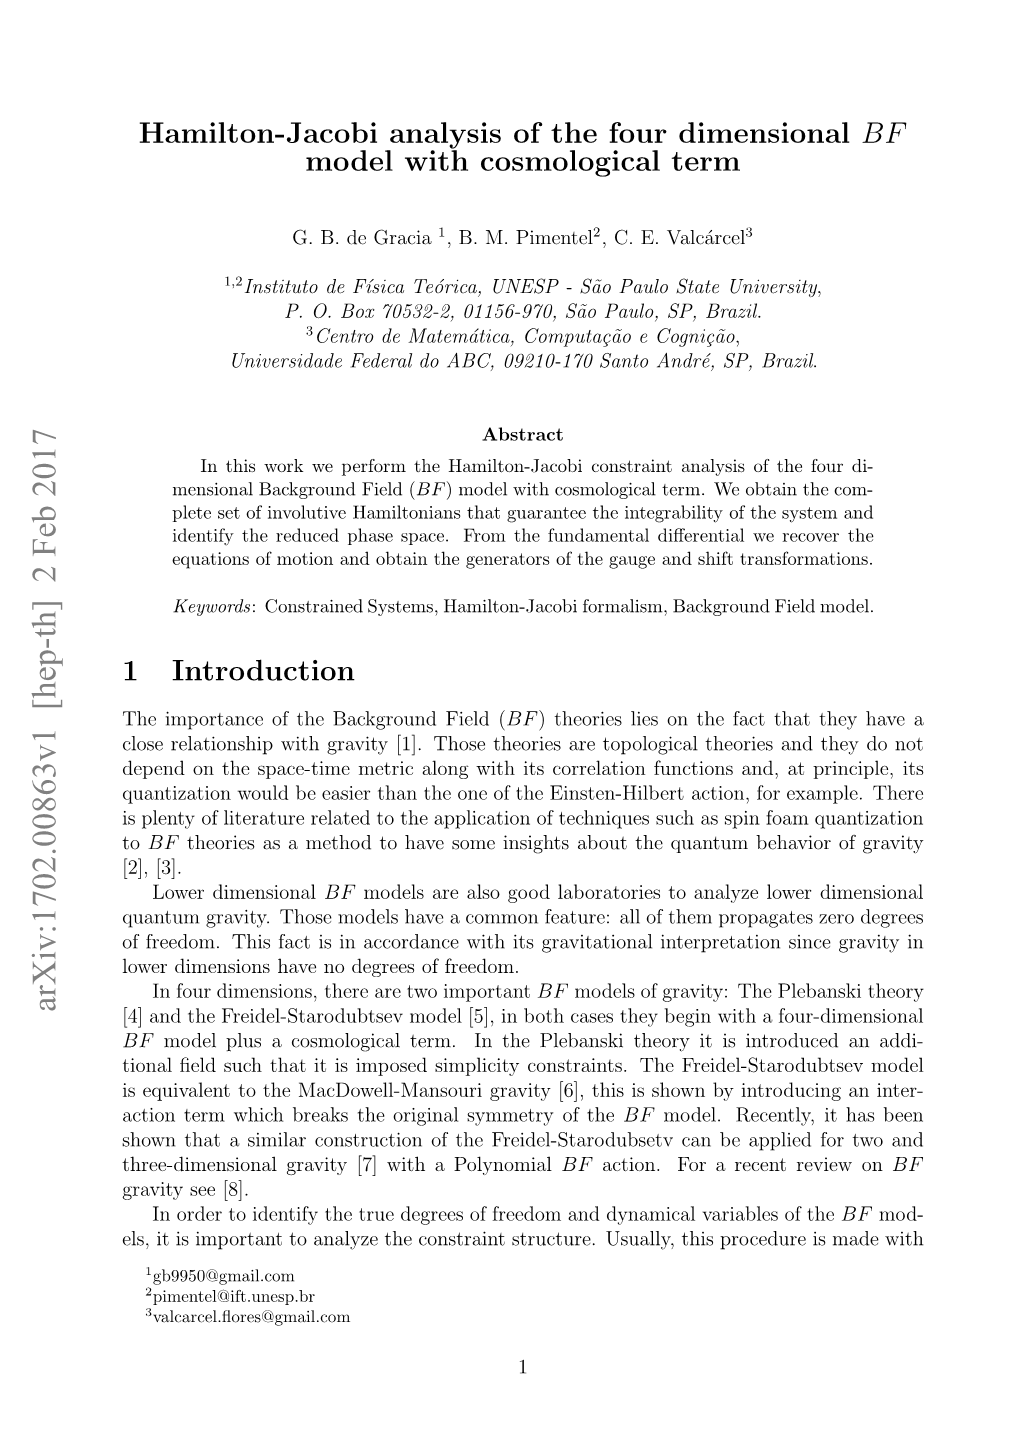 Hamilton-Jacobi Analysis of the Four Dimensional BF Model With